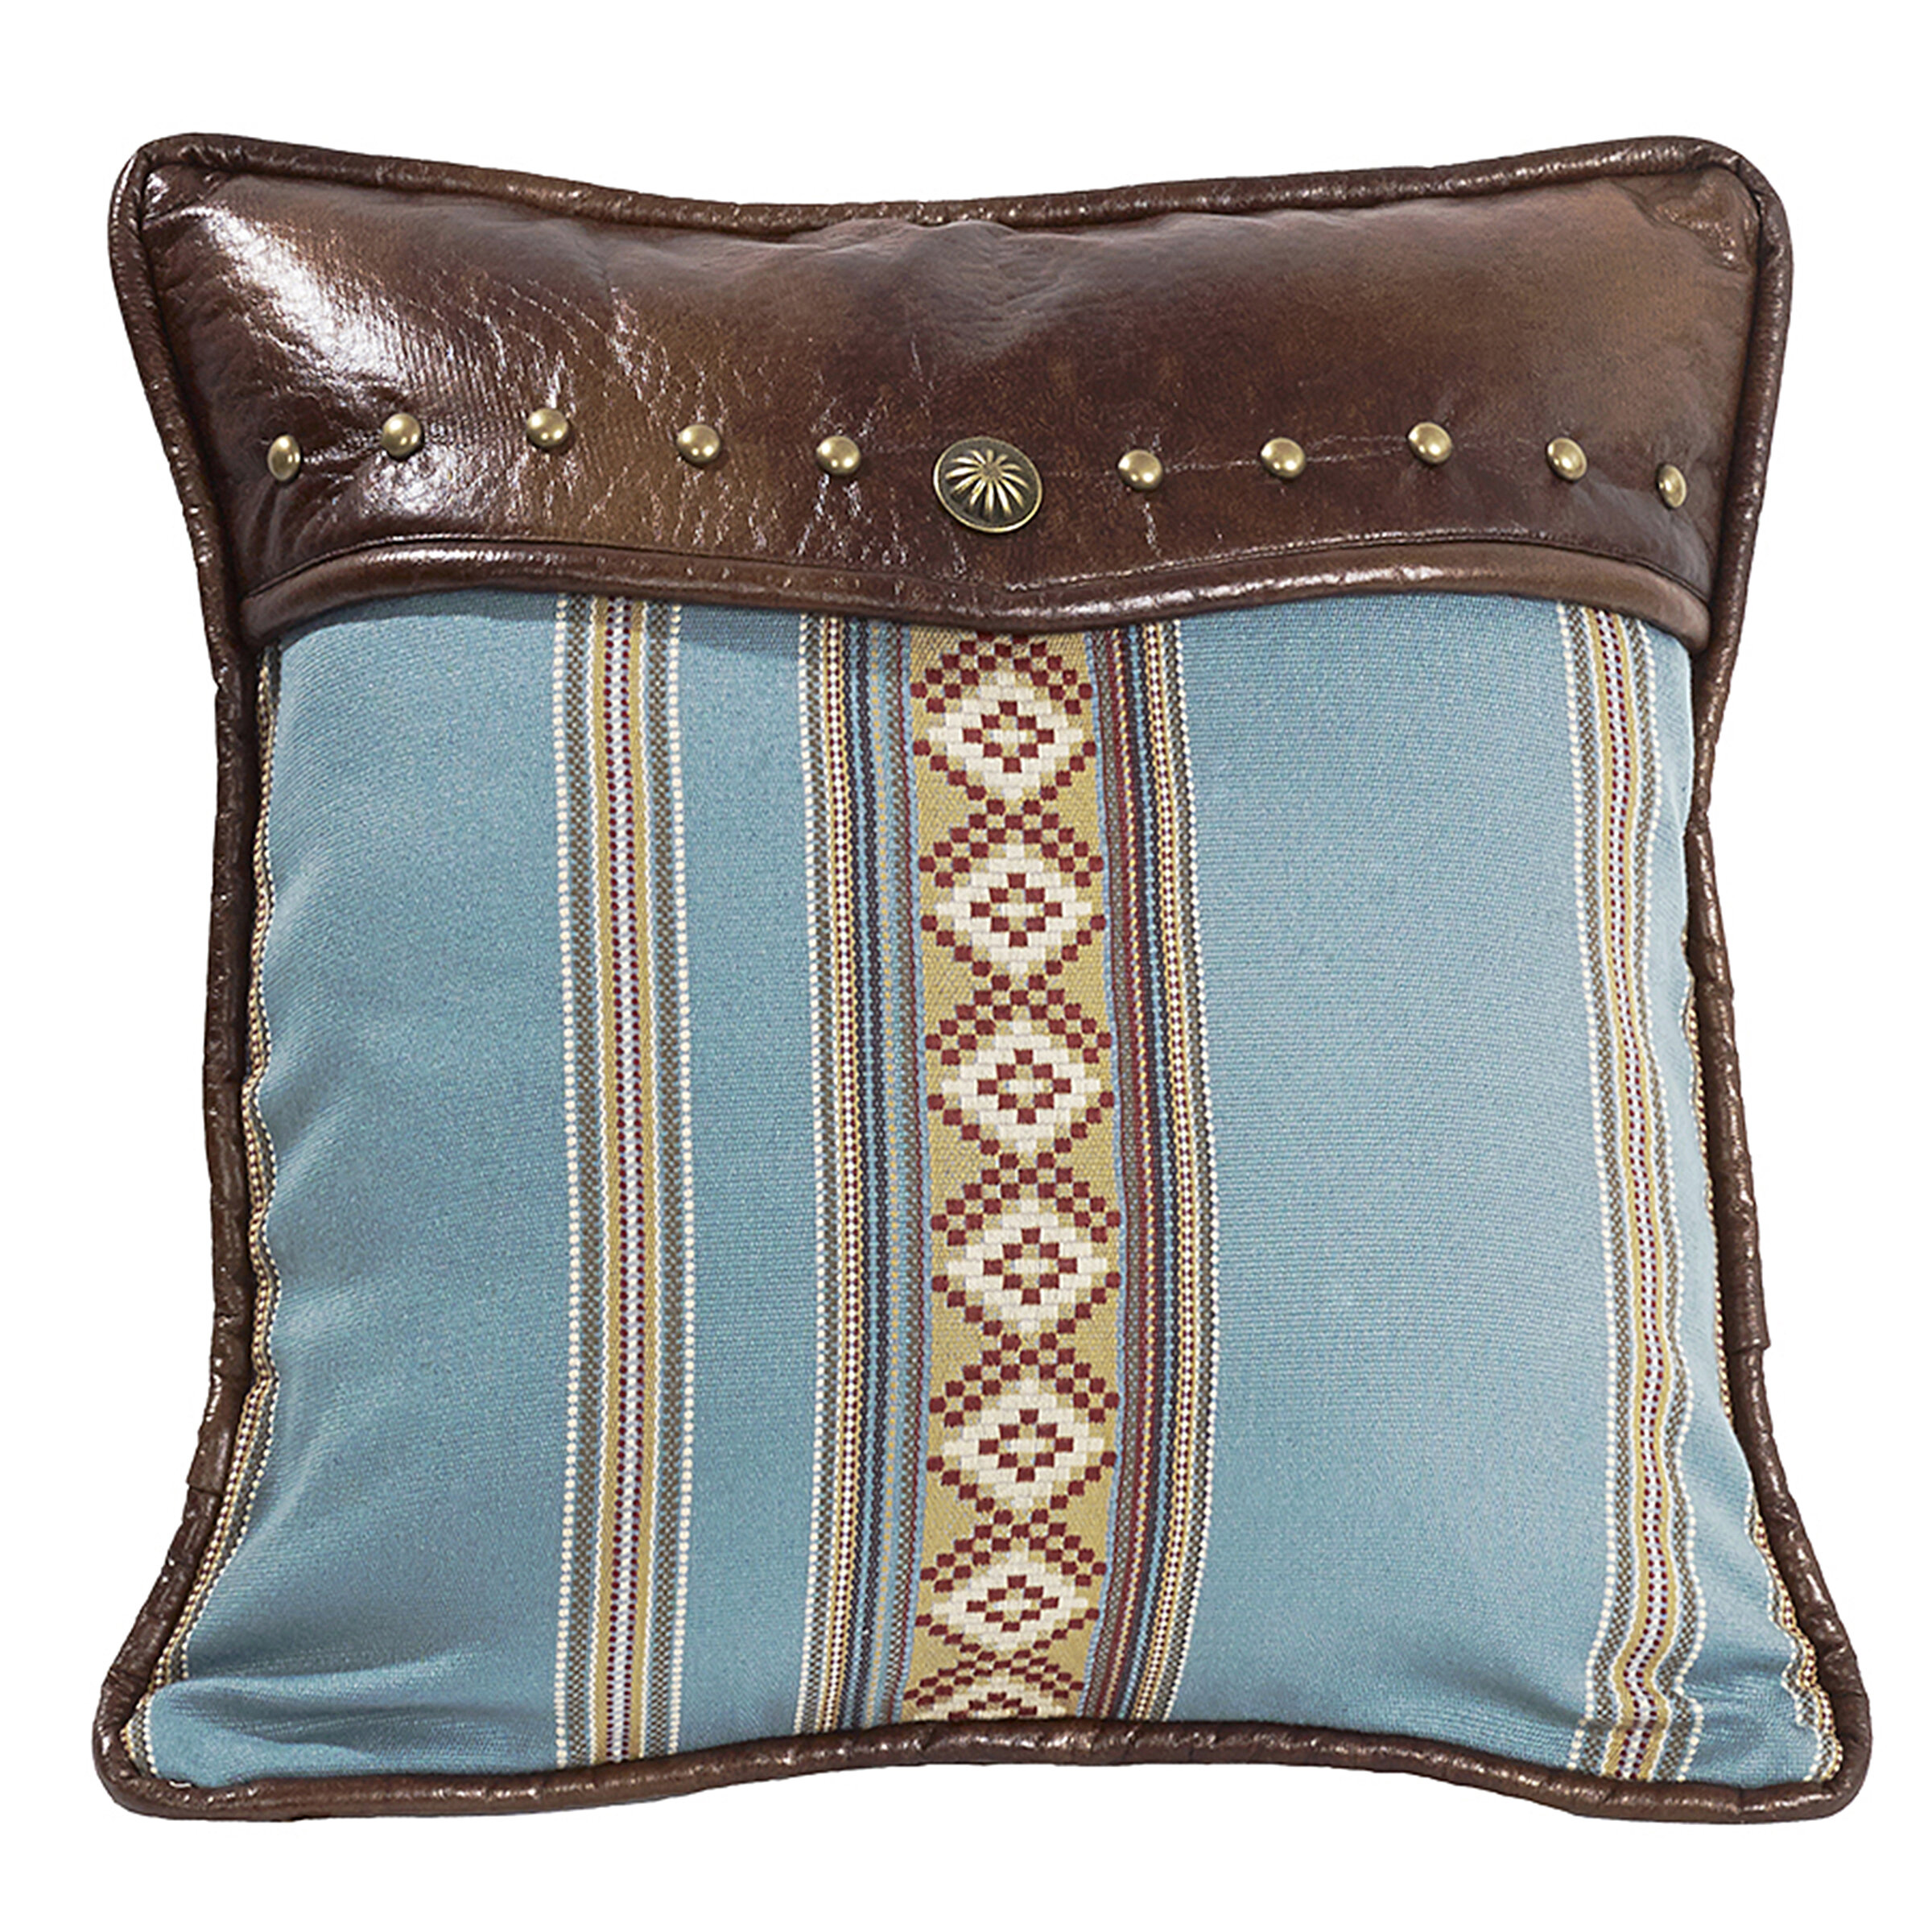 https://assets.wfcdn.com/im/66825430/compr-r85/1046/104626395/buskirk-southwestern-decorative-throw-pillow.jpg